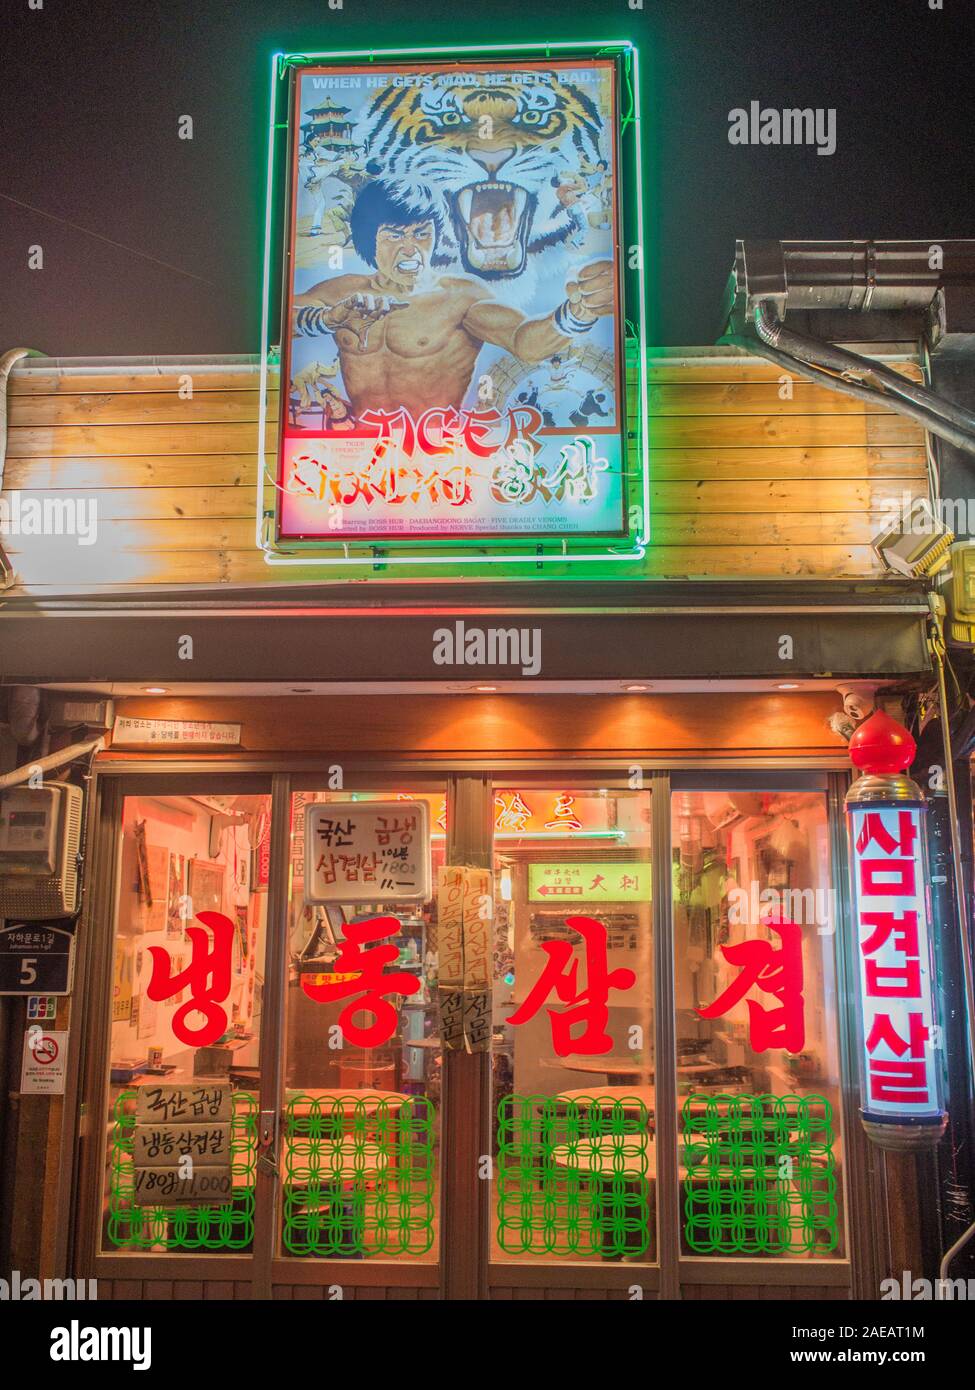 Ristorante, con kung fu movie pubblicità segno, finestra rossa con i caratteri cinesi, strada notte vicino a stazione di Gyeongbokgung, Seoul, Corea del Sud. Foto Stock